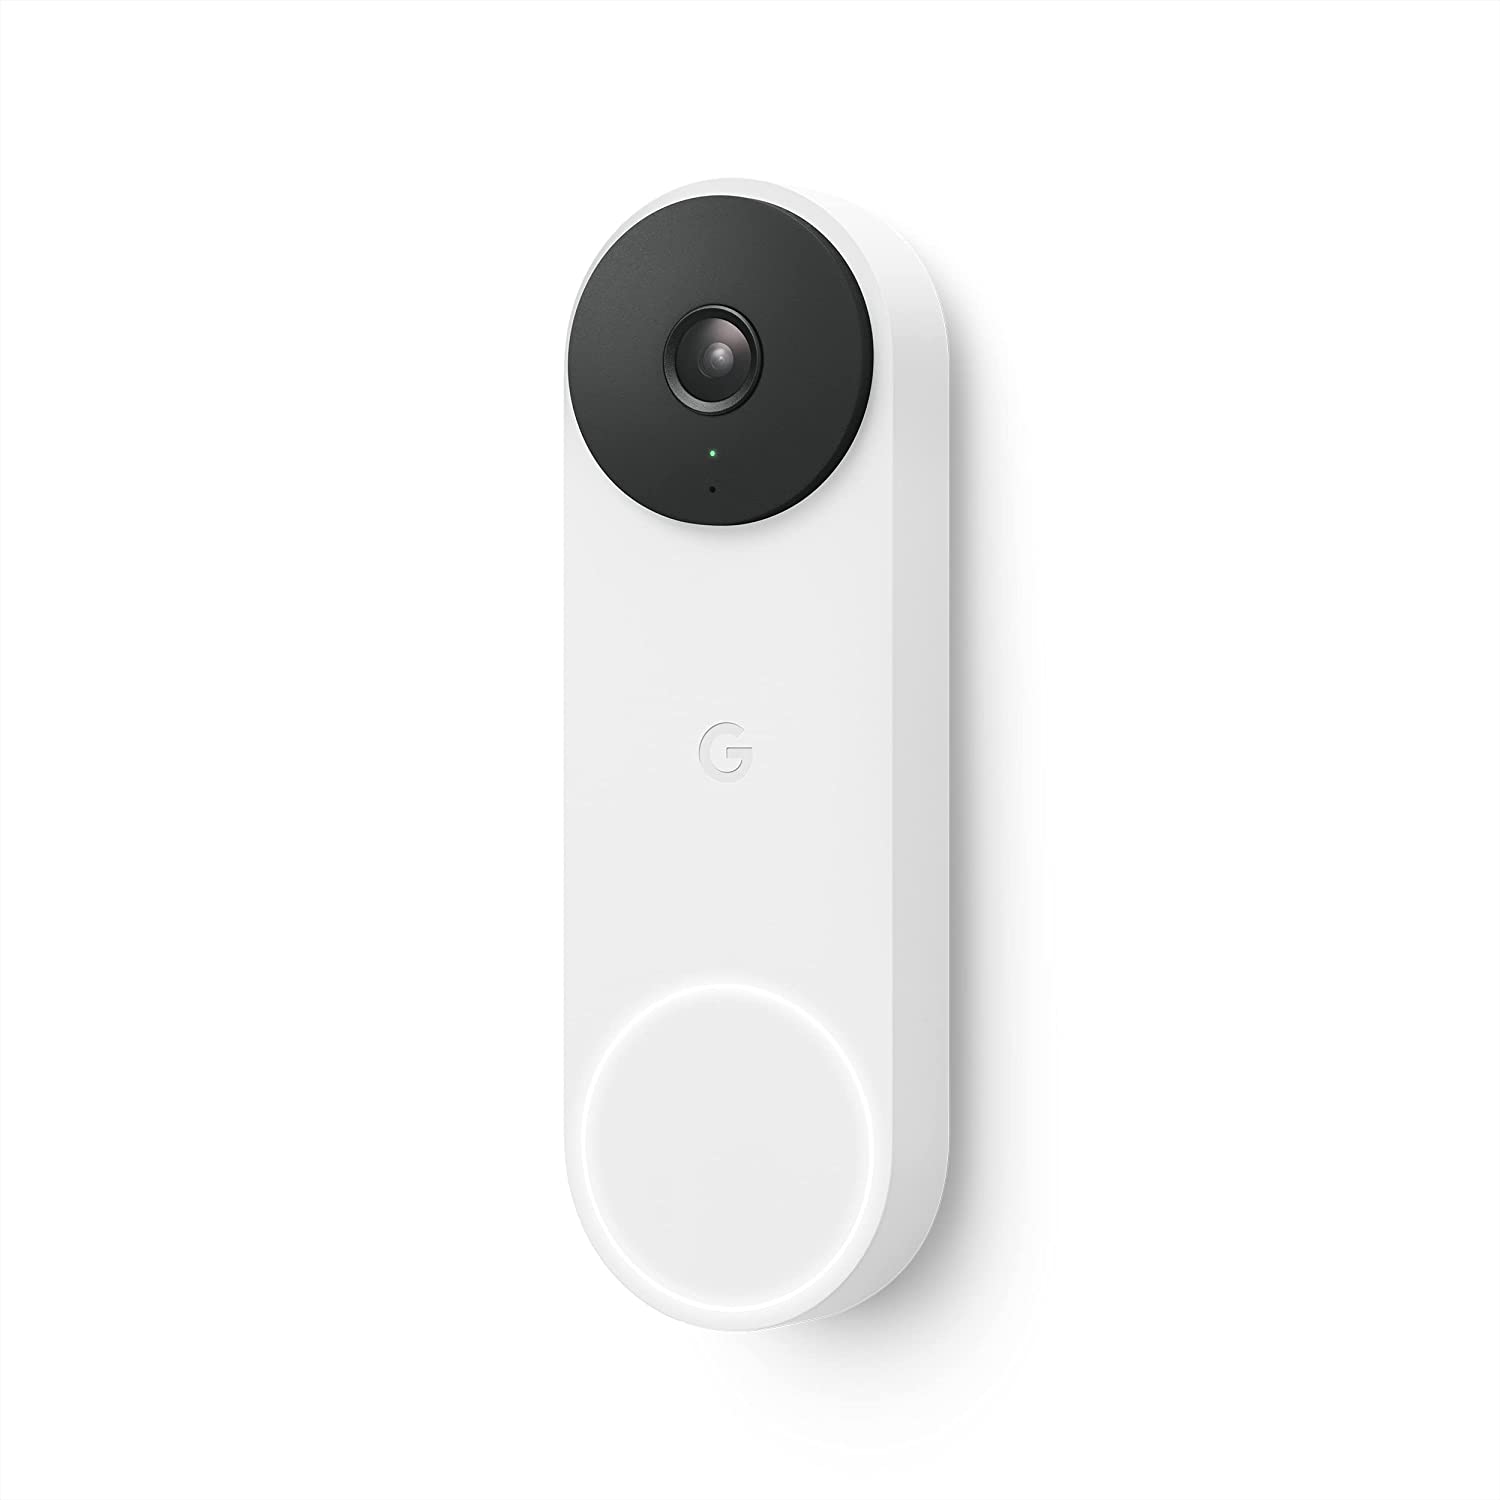 Google Nest Doorbell (Wired, 2nd Gen) Video Doorbell Security Camera 720p - Snow 